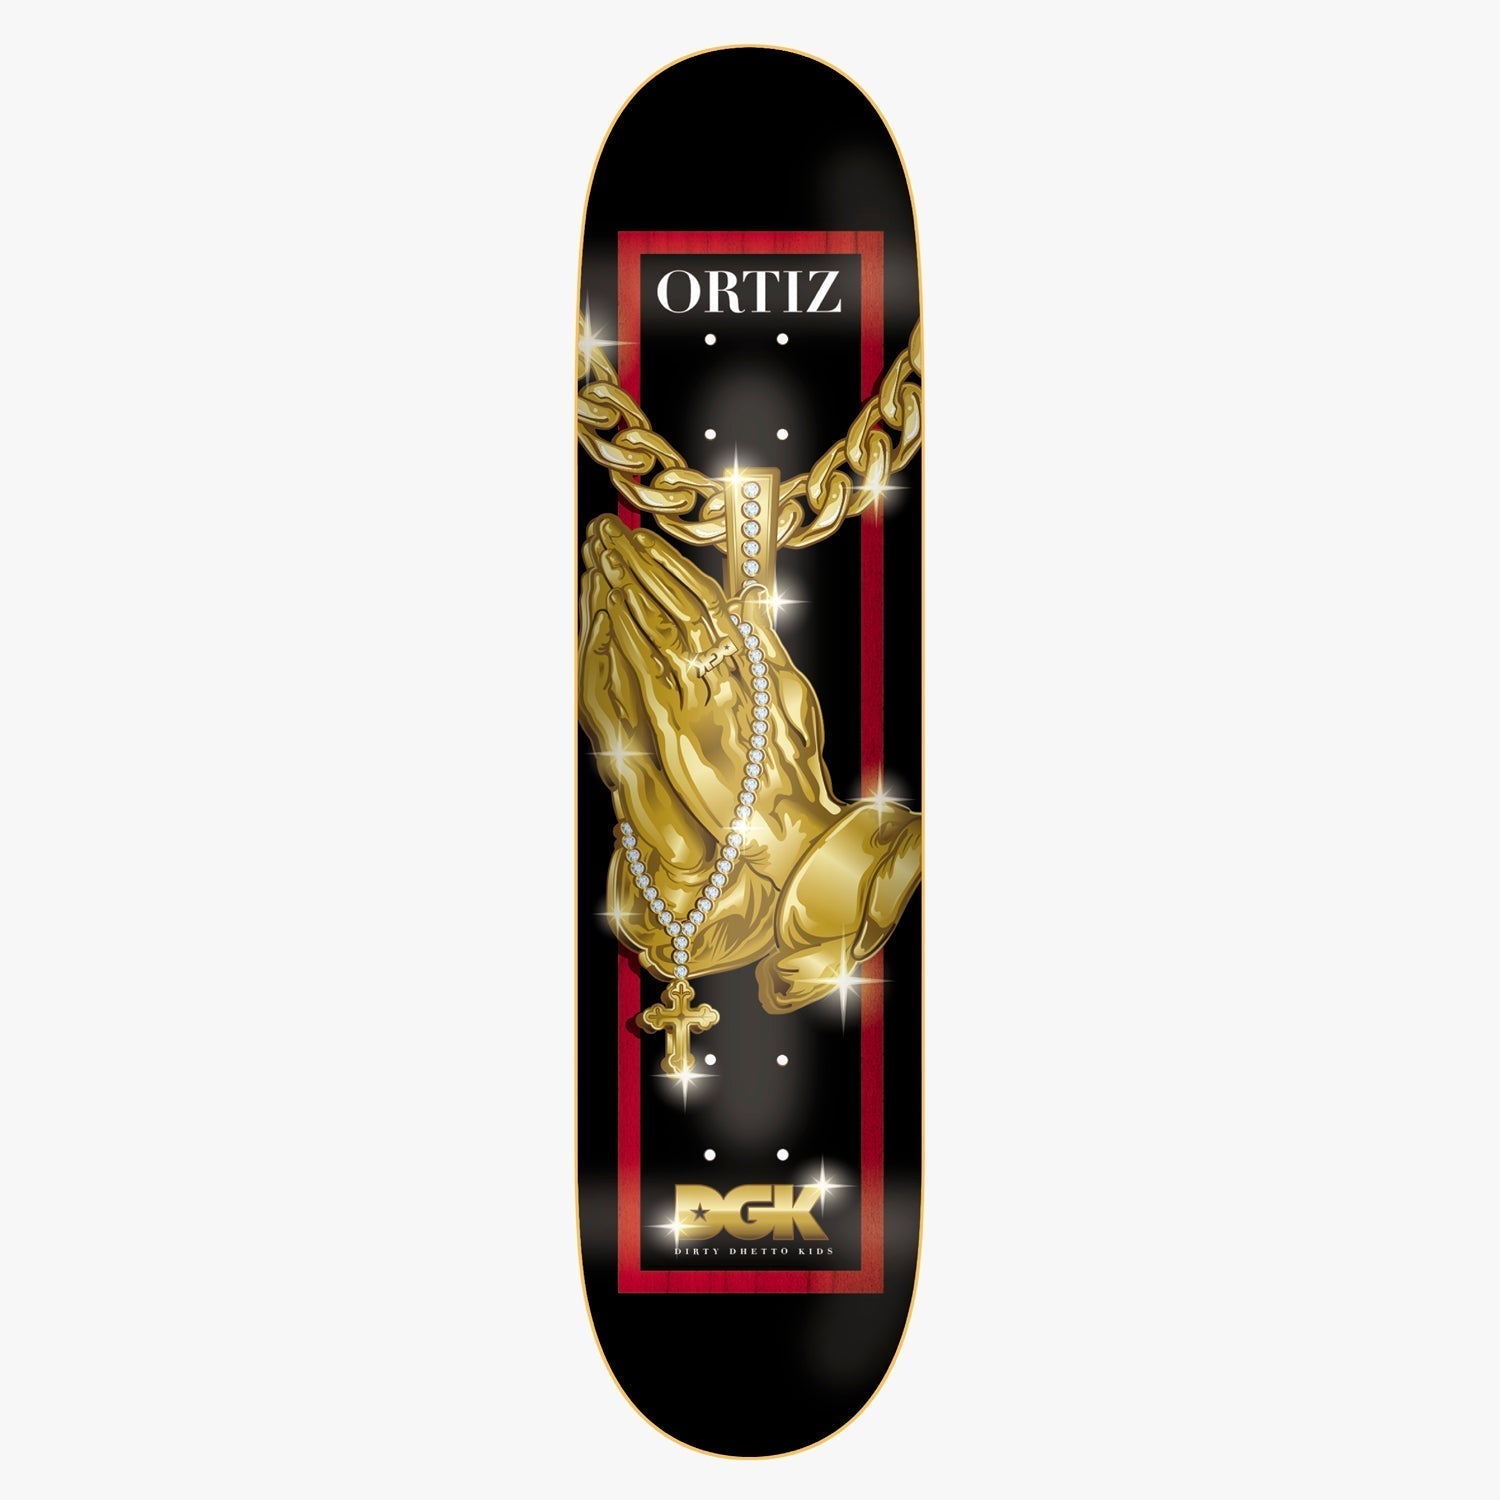 Chaz Ortiz Iced DGK Skateboard Deck